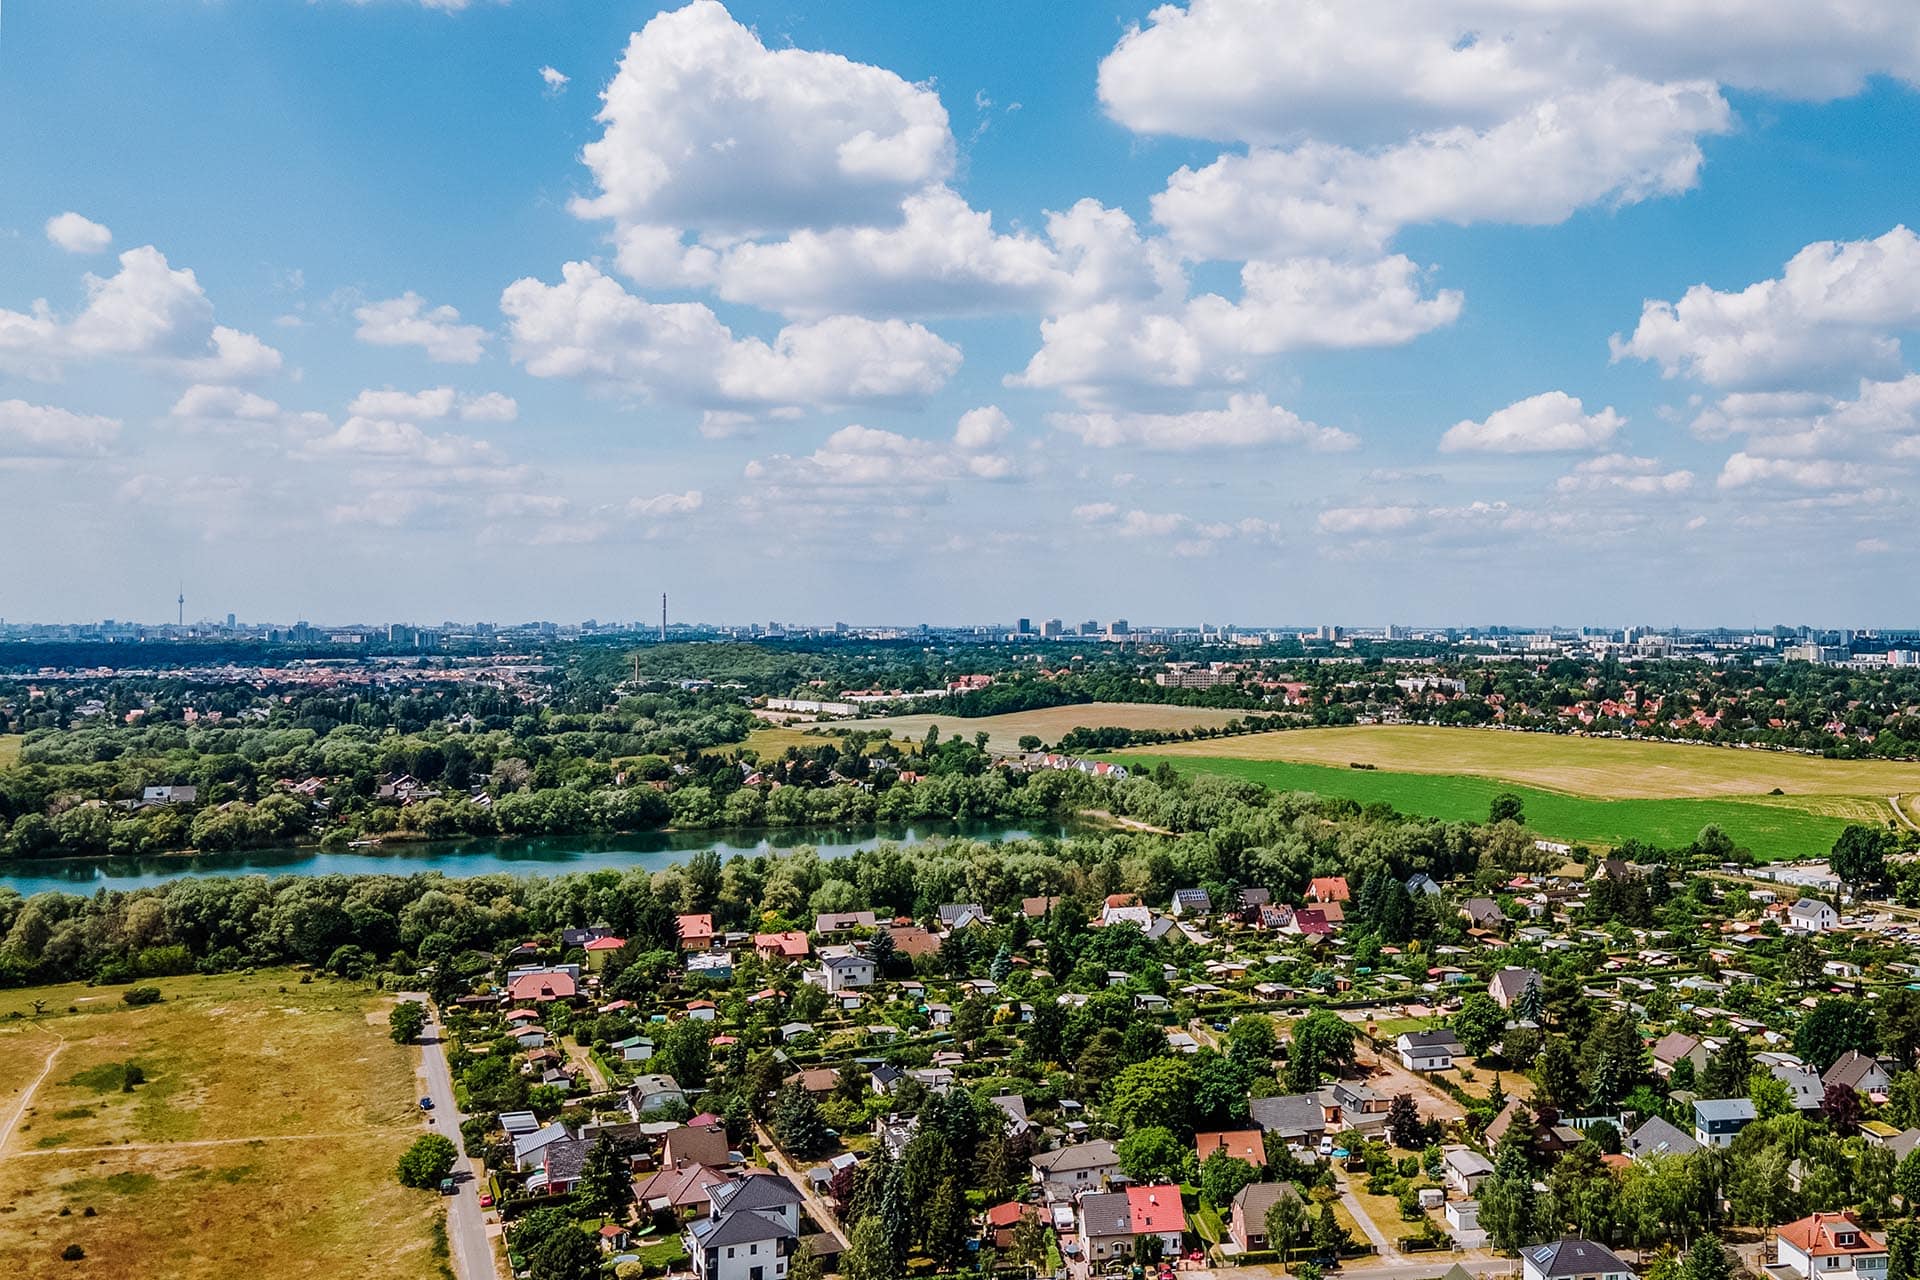 Hausverkauf Königs Wusterhausen – die besten Verkaufsargumente vom Immobilienmakler